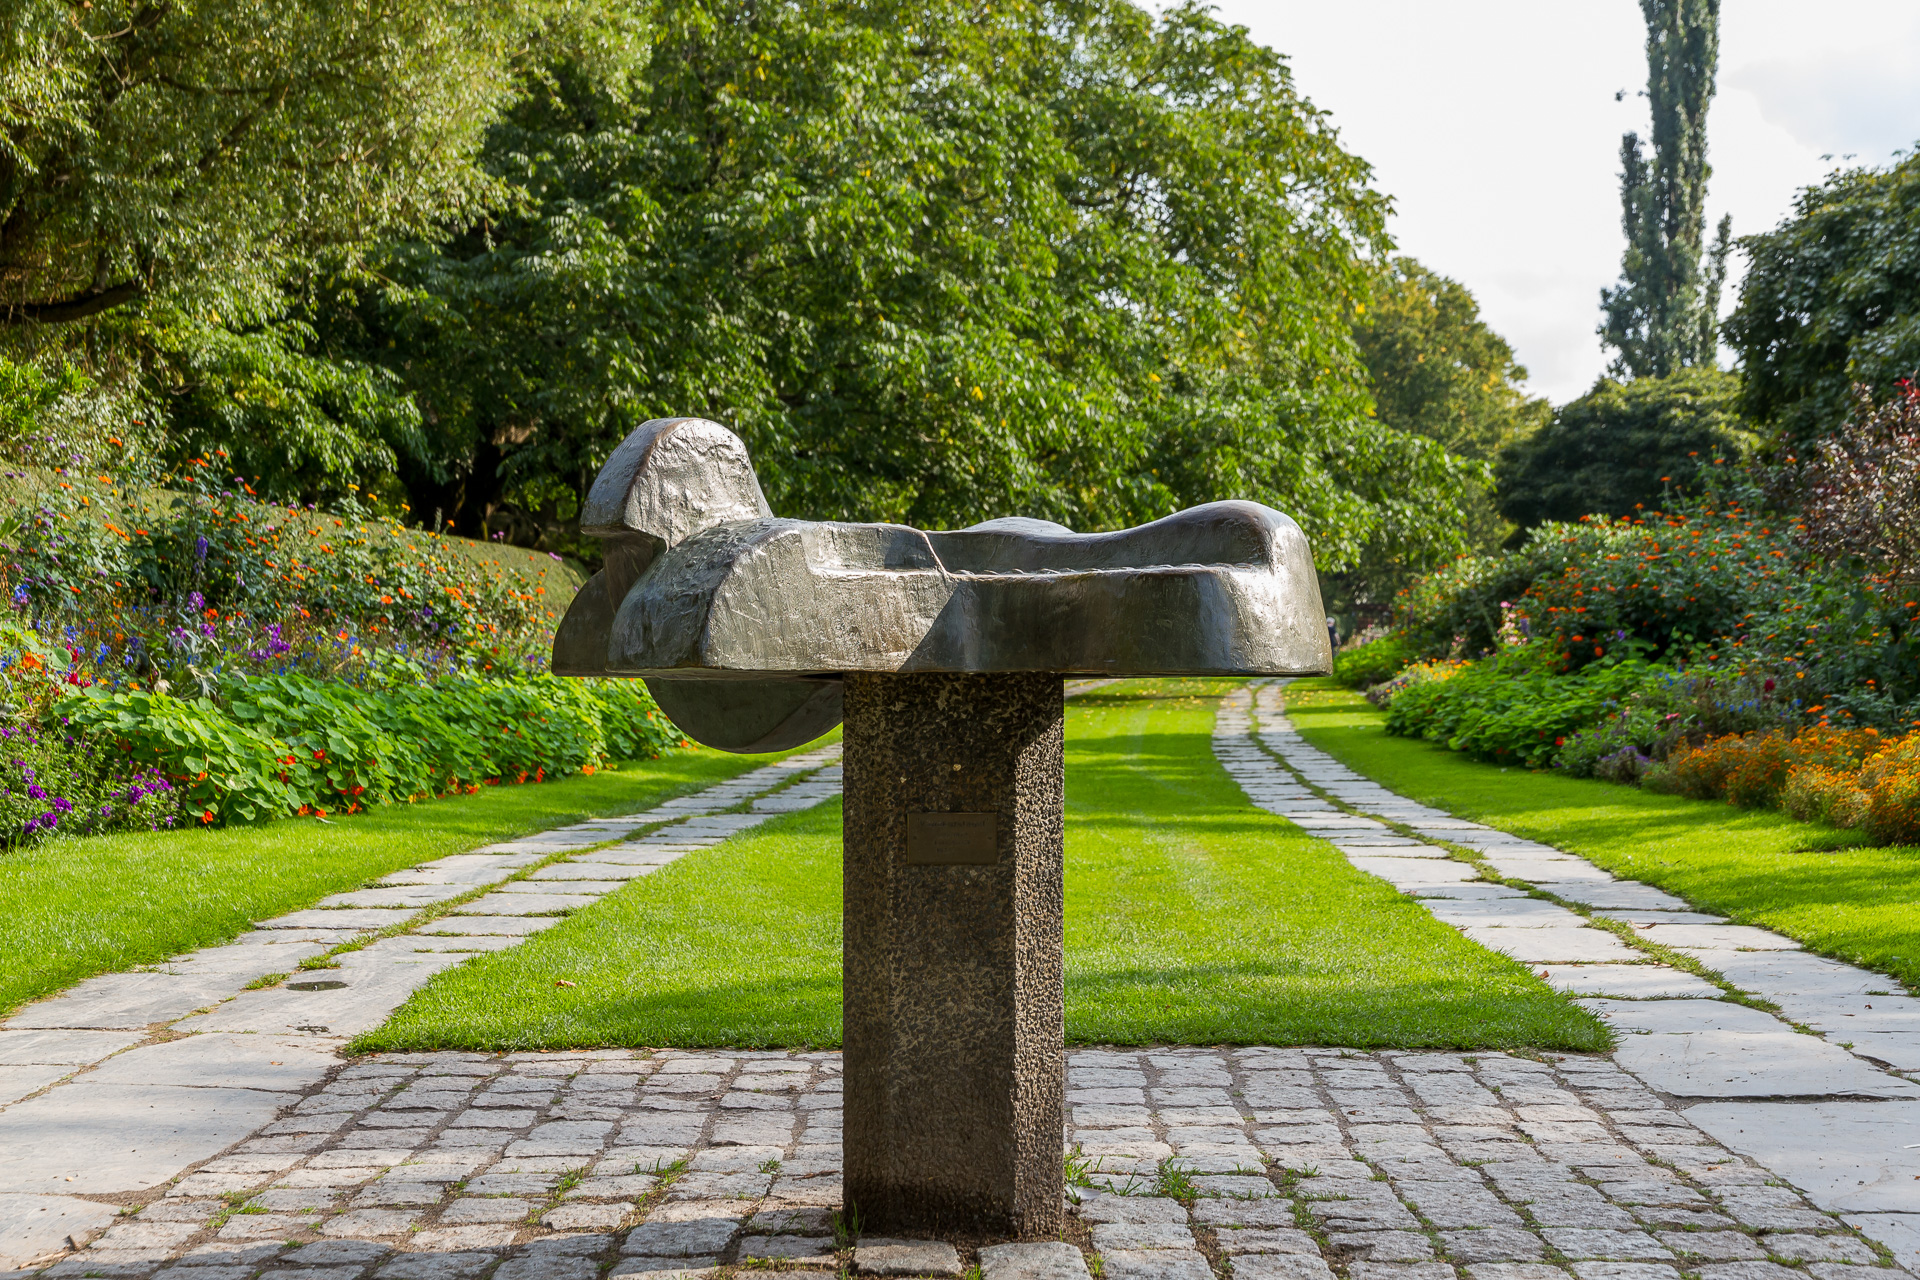 På en smal, rektangulär stensockel ligger en urgröpt formation i brons. Den kan liknas vid en liggande fågel.